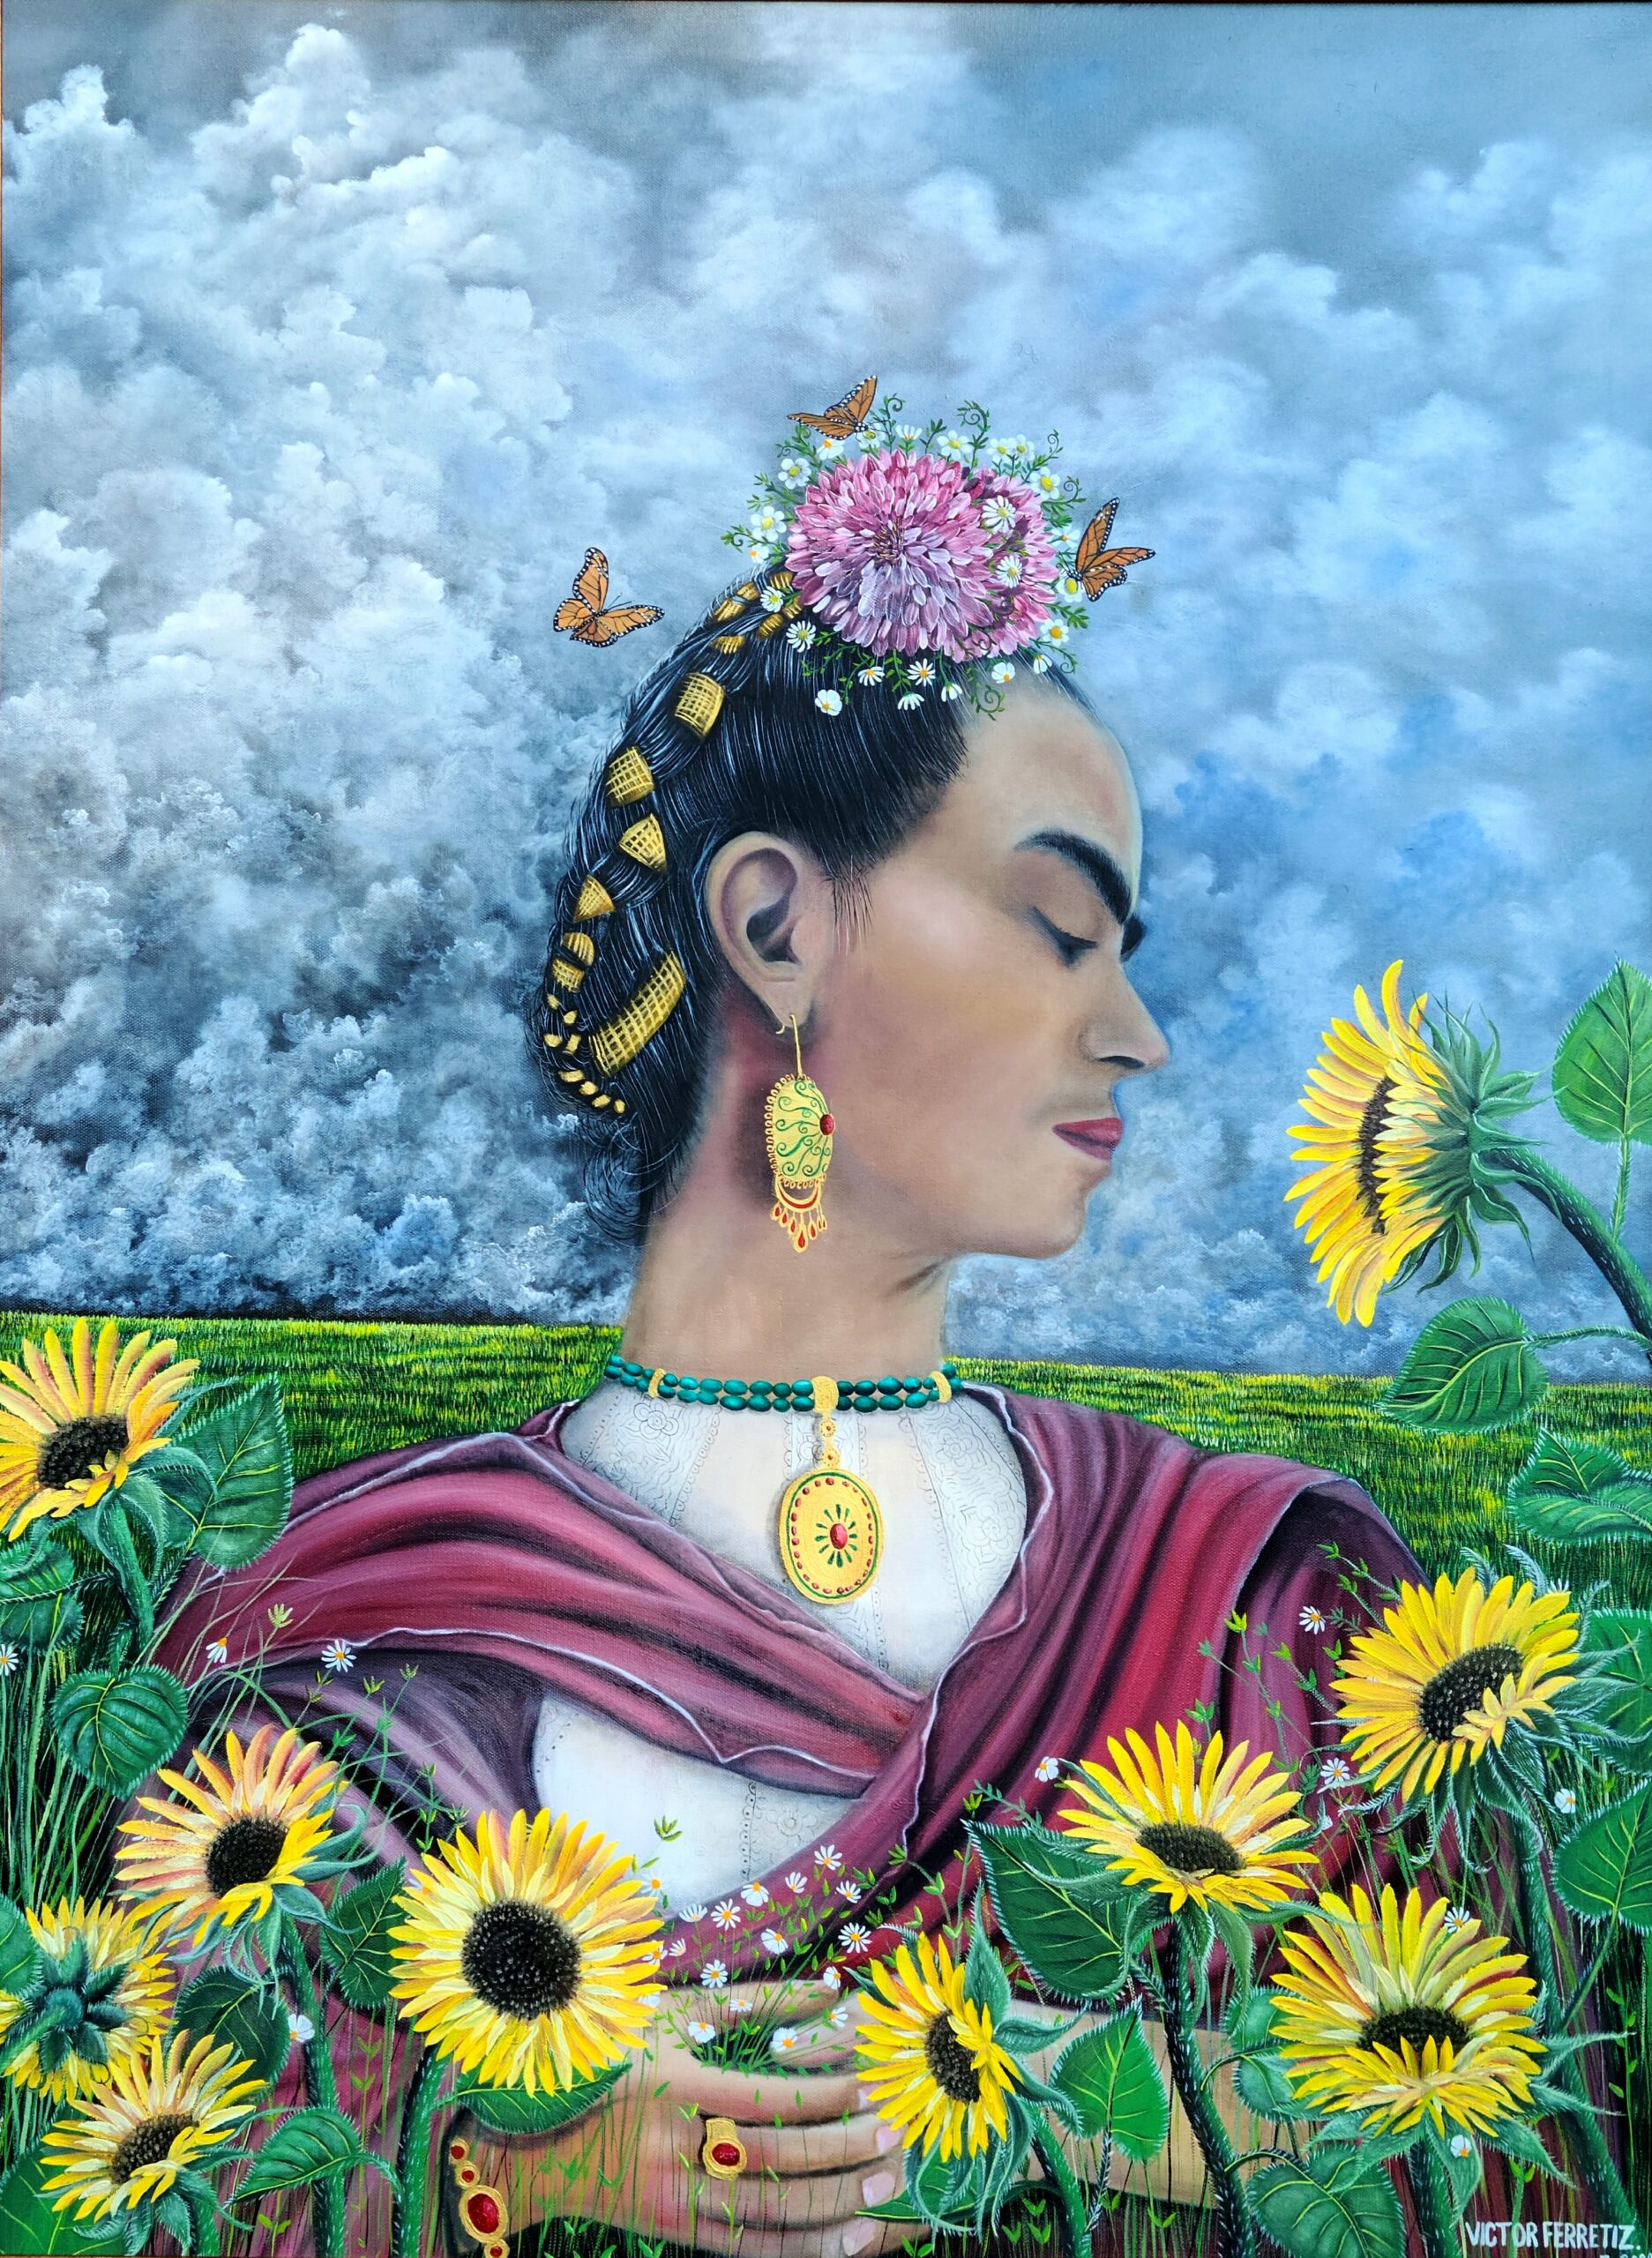 Ornate frame included / Marco ornamentado incluido. Esta obra fue inspirada en la eminente y famosa artista mexicana Frida Kahlo por sus bellos adornos florales en su cabeza y el uso de joyerias finas y unicas que en aquellos tiempos eran muy usados los cuales daban distinccion y garbo a las mujeres. Para mi esta obra significa el dolor disfrazado en belleza y elegancia, pero las flores son capaces de sentir nuestros dolores y penas. Por eso decidi titular esta obra de arte como "La Contemplacion del dolor de Frida" donde ella se encuentra inclinada mirando un girasol tristemente hacia abajo sobre su hombro izquierdo. Las caras y el lenguaje floral de los girasoles reflejan tristeza que se conecta con el dolor de Frida y sus penas. Al mismo tiempo esta obra mantiene a Frida de pie porque ella fue una mujer fuerte que siempre estuvo dispuesta a continuar luchando por su felicidad y por el amor a la pintura. Por eso me identifico con ella en ese aspecto de que yo siempre seguire pintando mientras dios me de vida y pasion para levantar un pincel con pintura y plasmar lo que siento como artista liberal que soy tal como las mariposas monarcas.Translation: This work was inspired by the eminent and famous Mexican artist Frida Kahlo for her beautiful floral ornaments on her head and the use of elegant and unique jewelry widely used, giving distinction and grace to women. For me, this work means pain disguised in beauty and elegance, but flowers can feel our pain and sorrow. That is why I decided to title this work of art "The Contemplation of Frida's Pain," where she is leaning sadly, looking down at a sunflower over her left shoulder. The faces and the flowery language of the sunflowers reflect sadness connected to Frida's pain and sorrow. At the same time, this work keeps Frida standing because she was a strong woman who was always willing to continue fighting for her happiness and love of painting. That is why I identify with her in that aspect that I will always continue painting while God gives me life and passion for picking up a brush with paint and capturing what I feel like a liberal artist, just like the monarch butterflies.